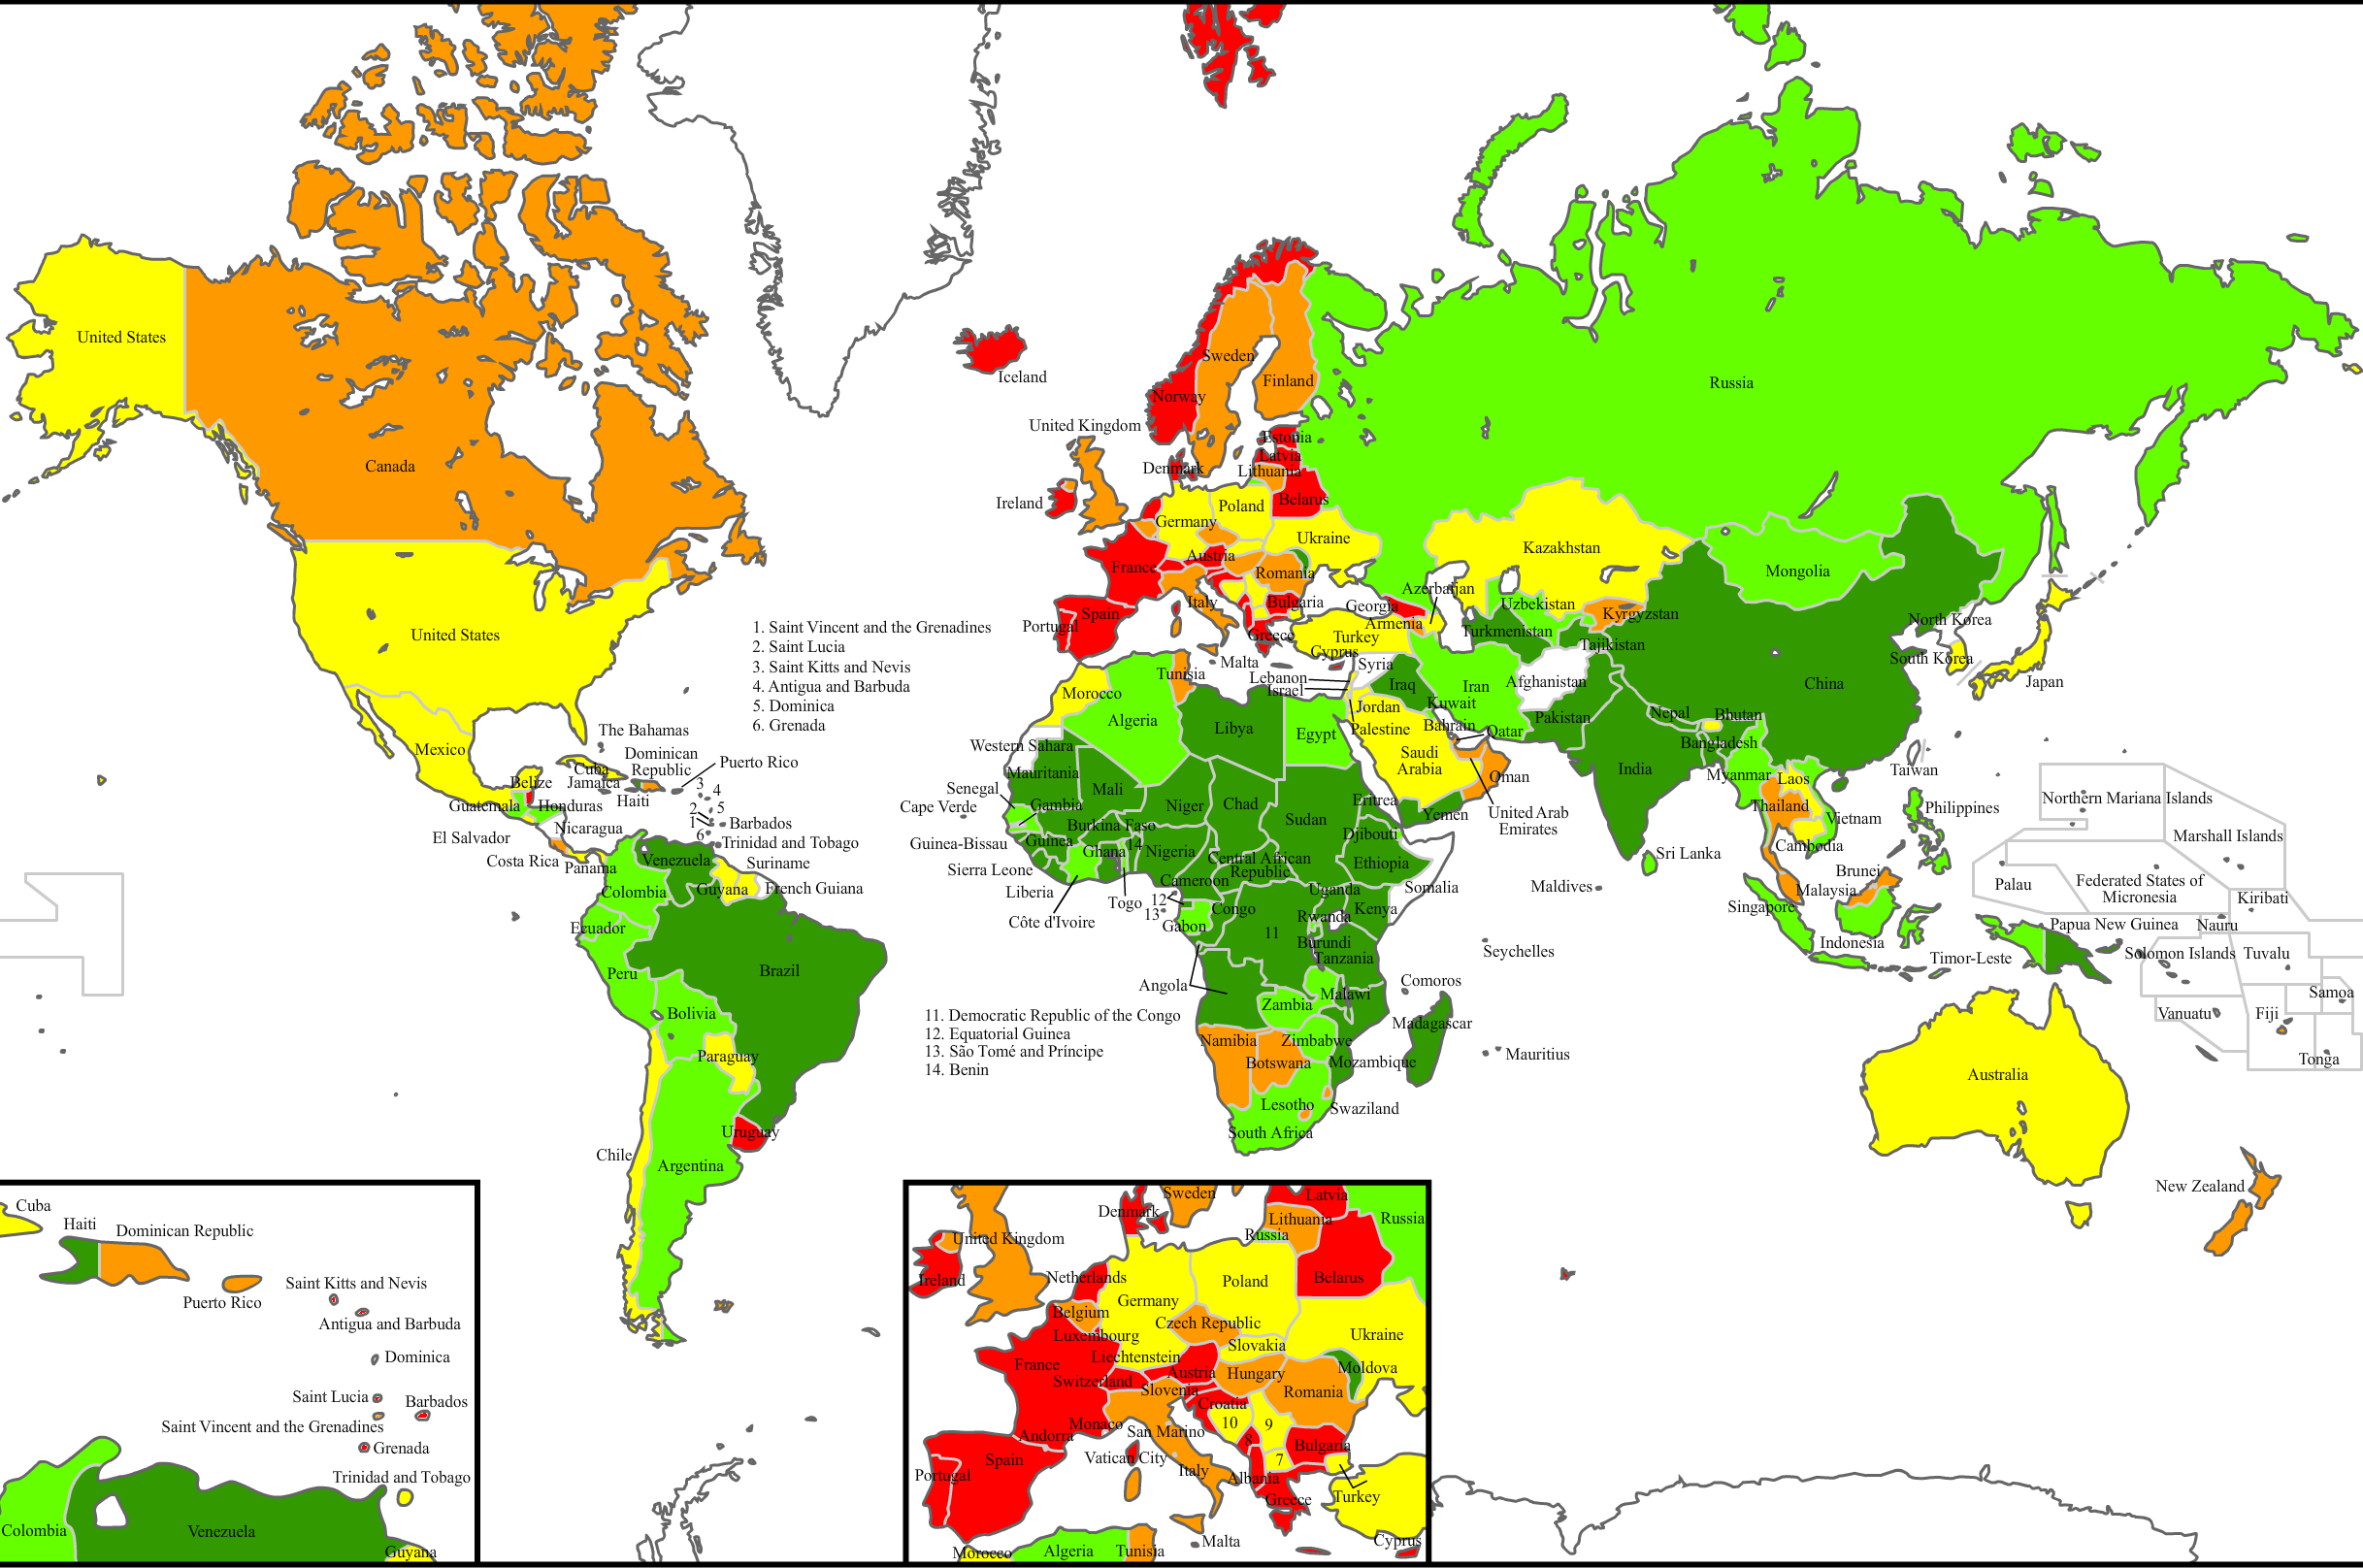 Turizmo žemėlapis. Kuo žalesnė šalis, tuo mažiau turistų (palyginus su gyventojų skaičiumi). Kuo raudonesnė - tuo daugiau.